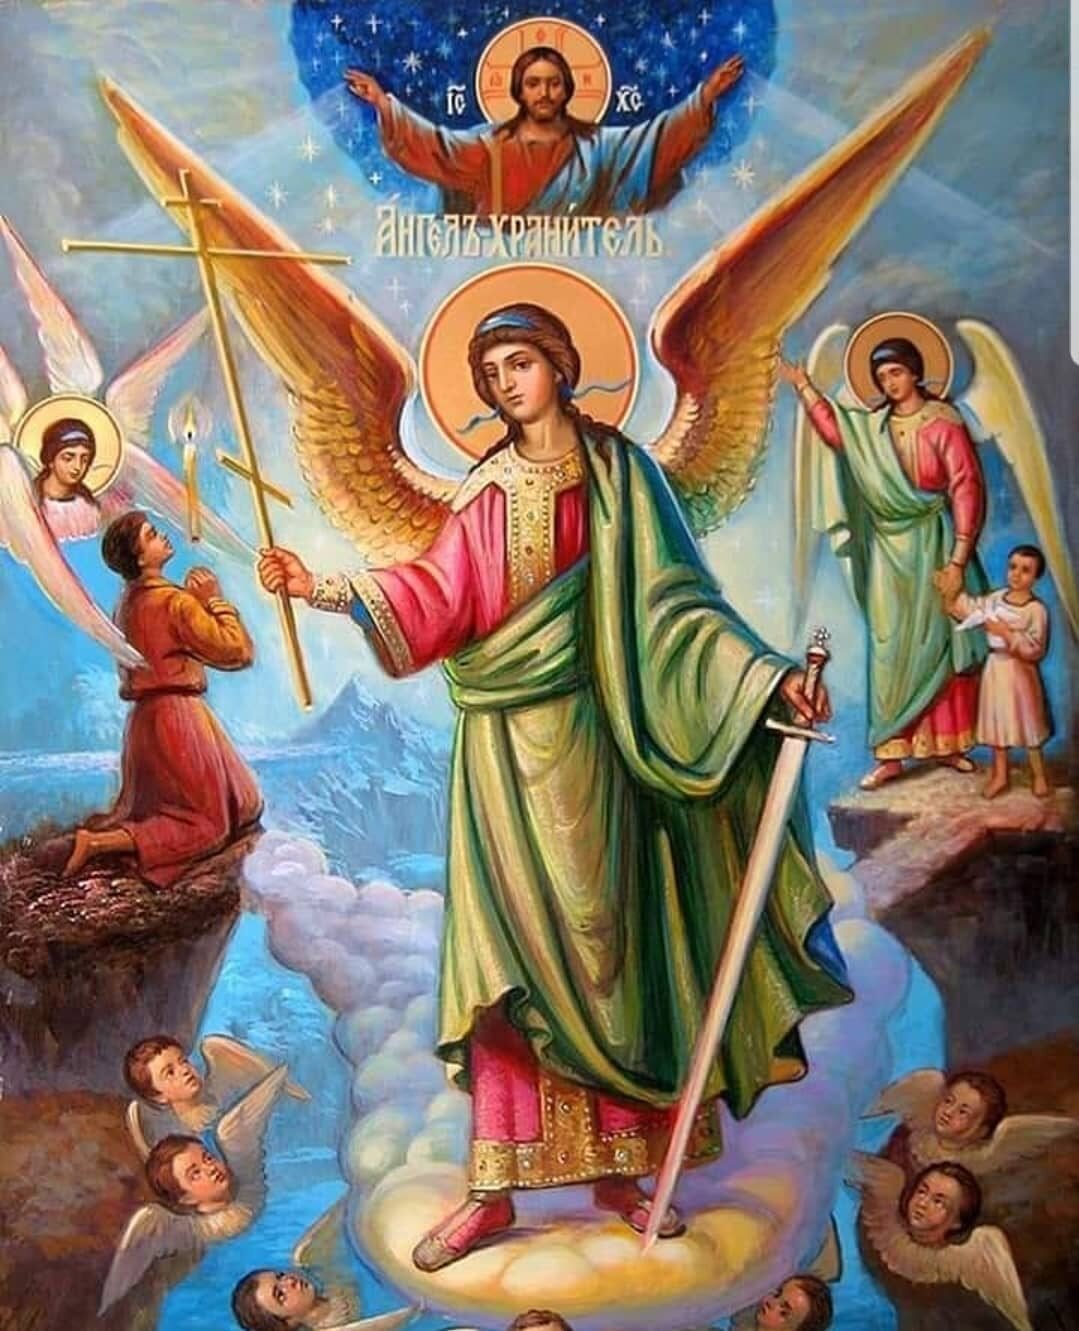 Ангелы святого человека. Бернард Плокгорст ангел хранитель. Ангел хранитель икона православная.